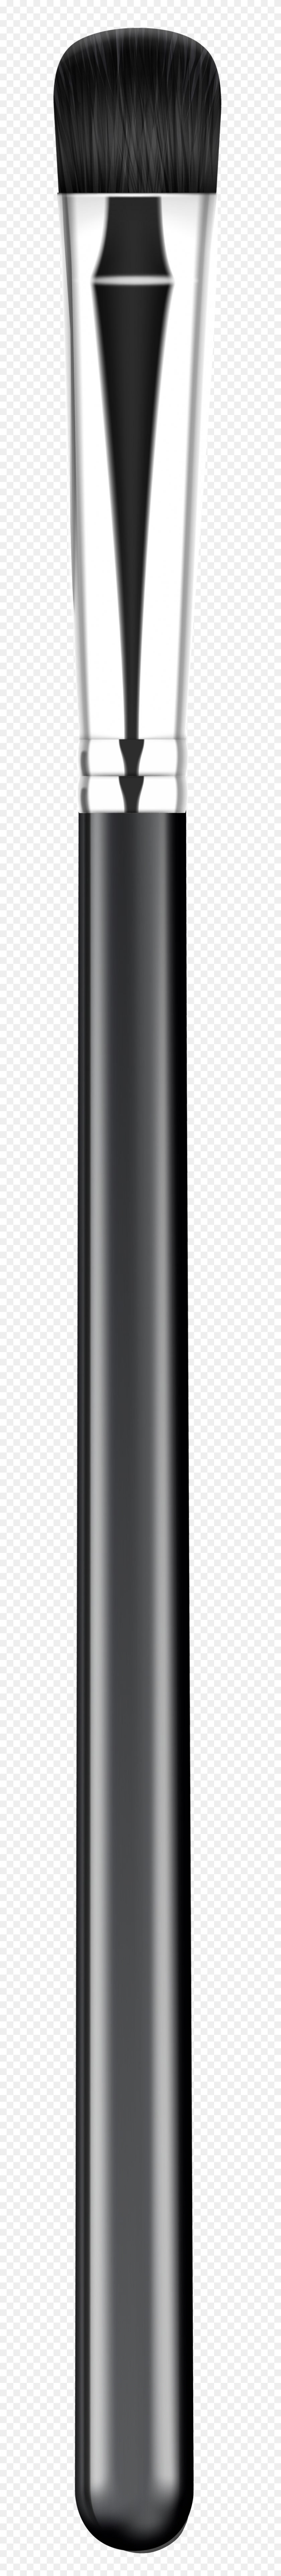 817x8000 Makeup Brush Png Clip Art - Putting On Makeup Clipart